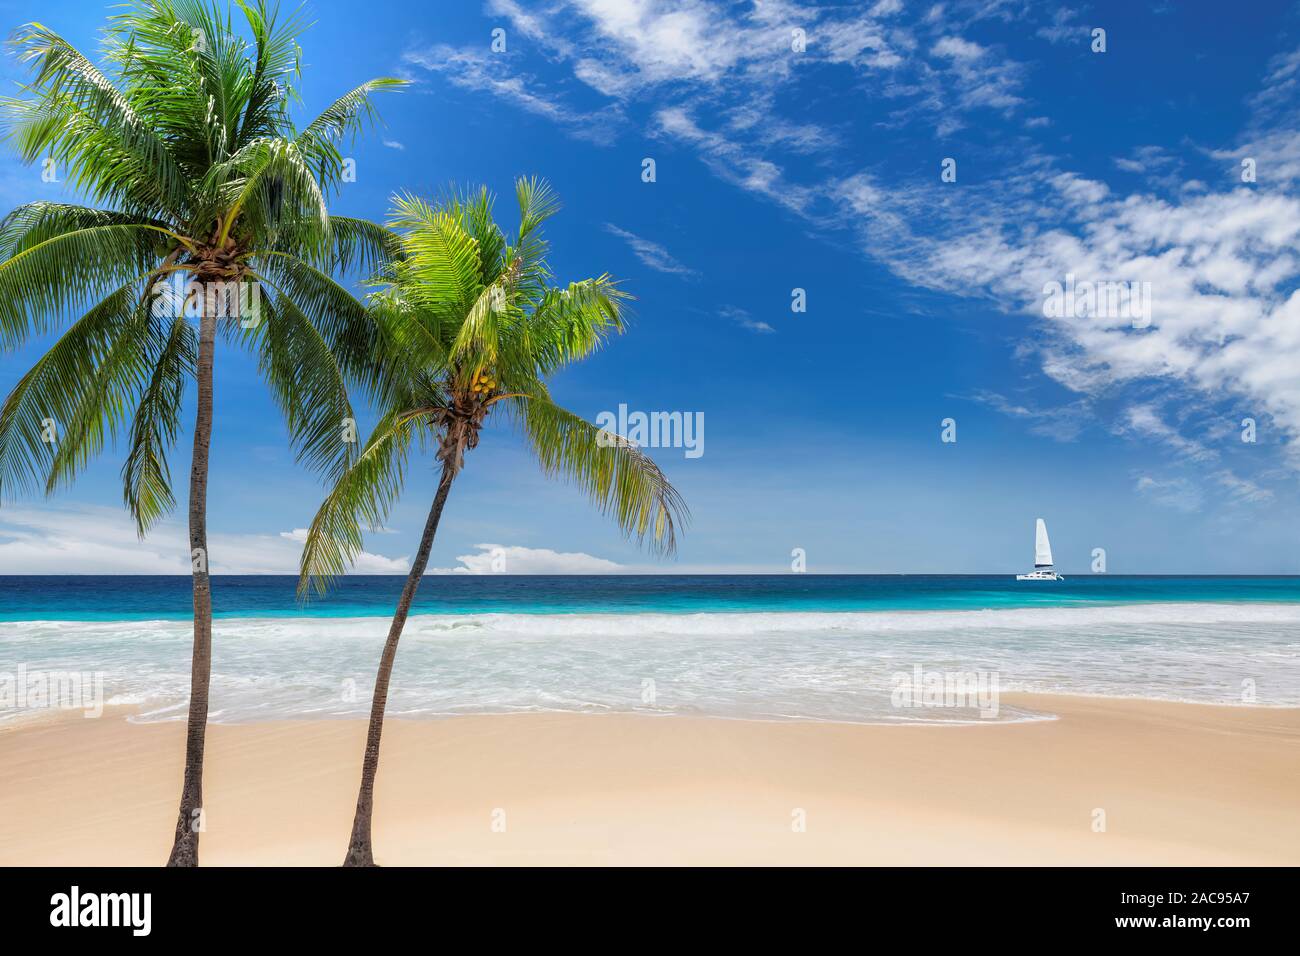 Una bellissima spiaggia di sabbia con palm e una barca a vela nel mare turchino dei Caraibi Foto Stock